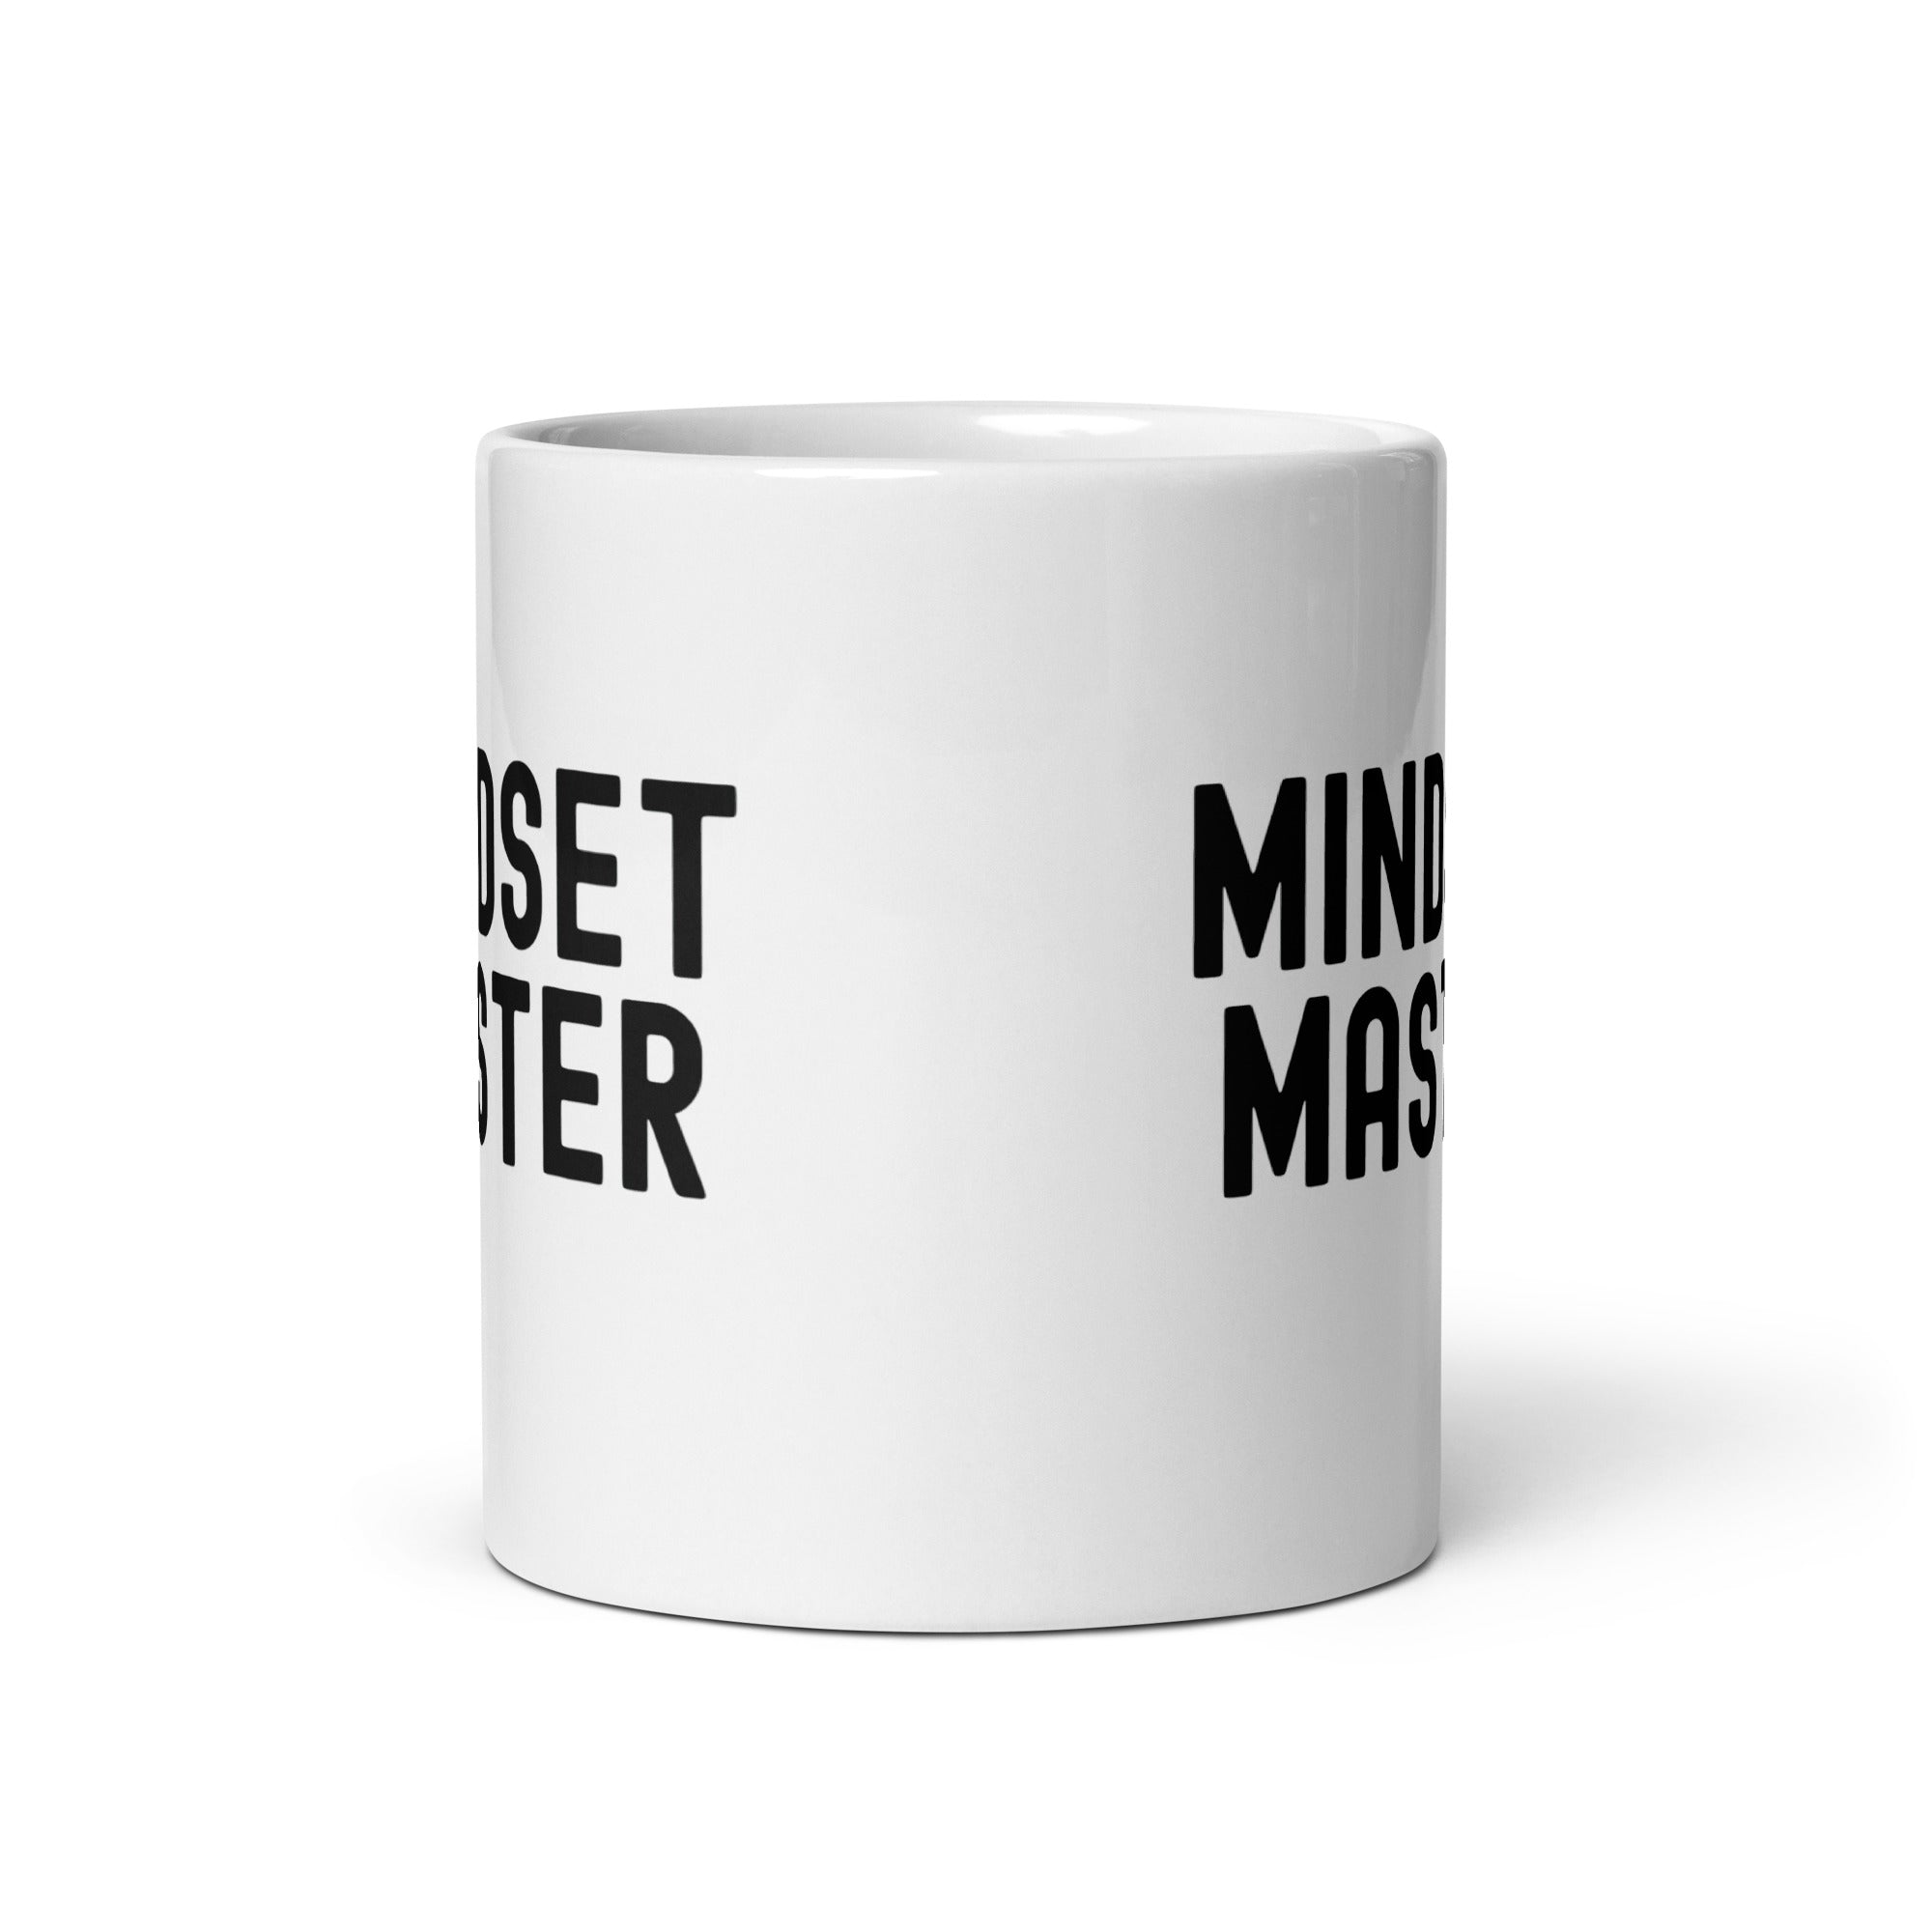 White glossy mug | Mindset Master